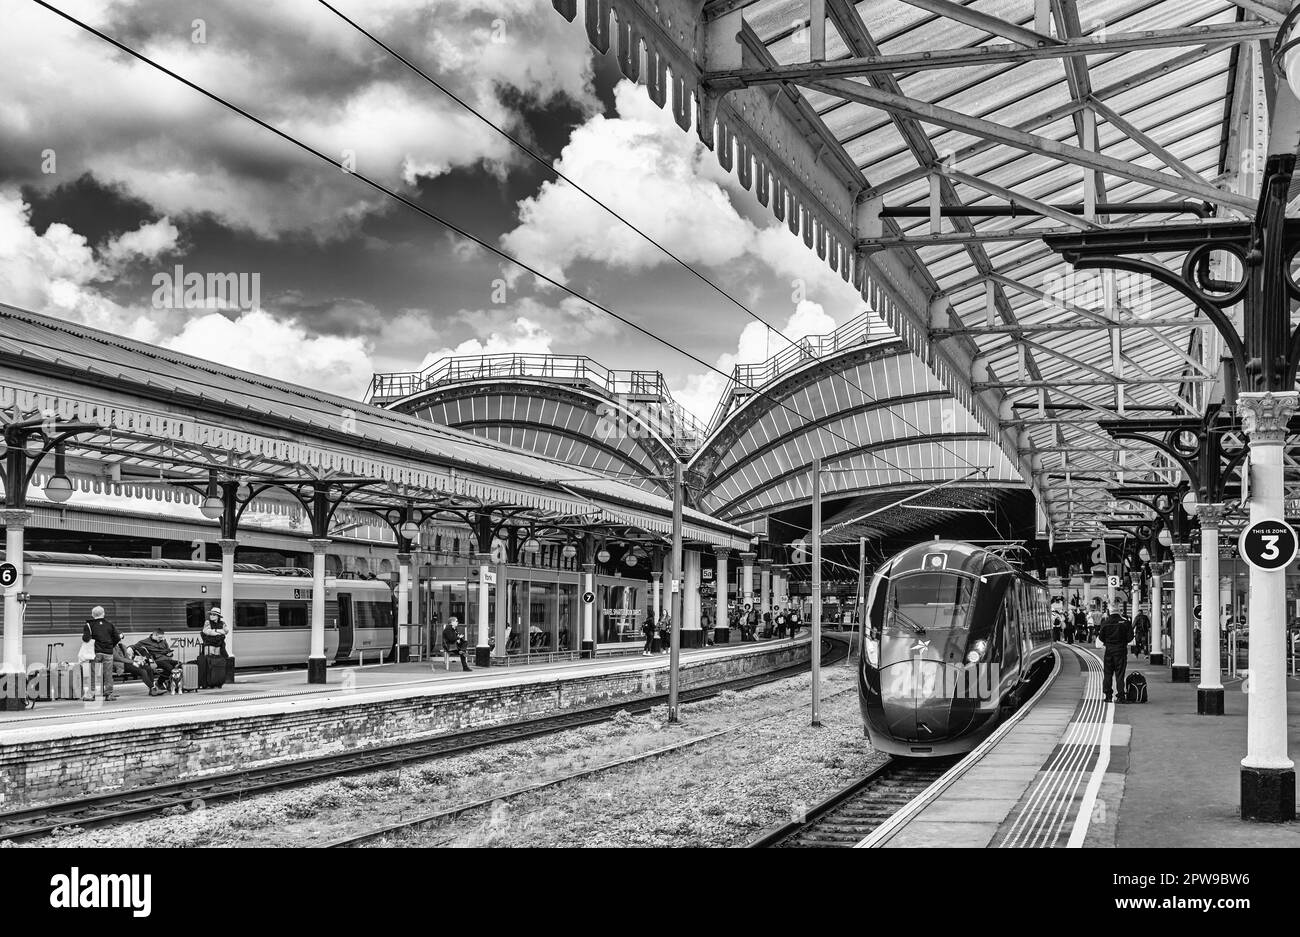 Ein Zug steht neben einem Bahnsteig mit Architektur aus dem 19. Jahrhundert. Passagiere warten auf Züge und ein Himmel mit Wolken ist oben. Stockfoto